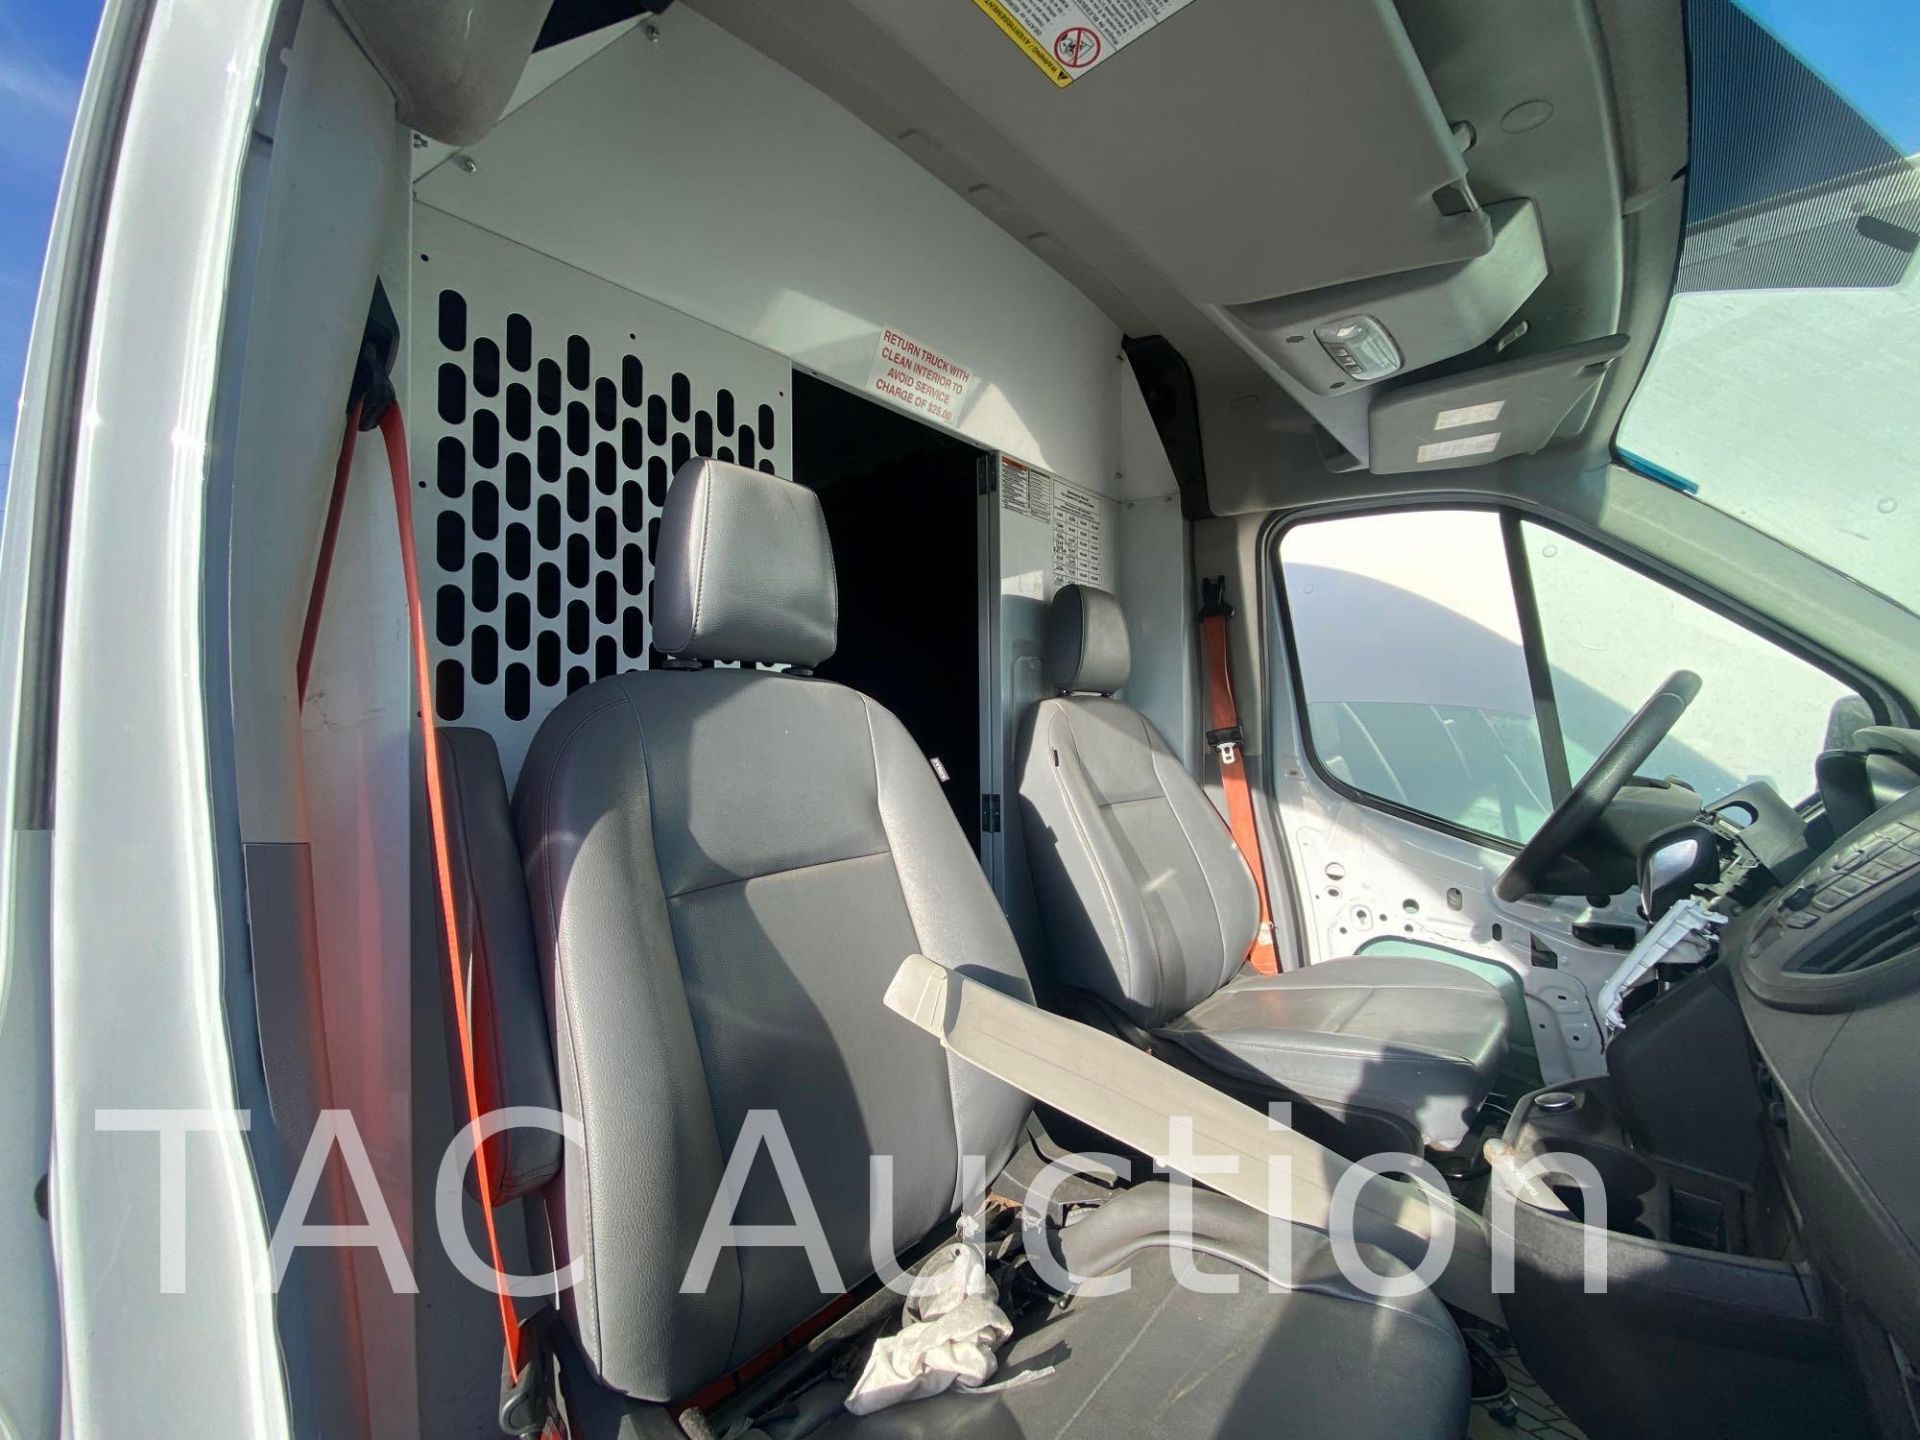 2019 Ford Transit 150 Cargo Van - Image 105 of 133